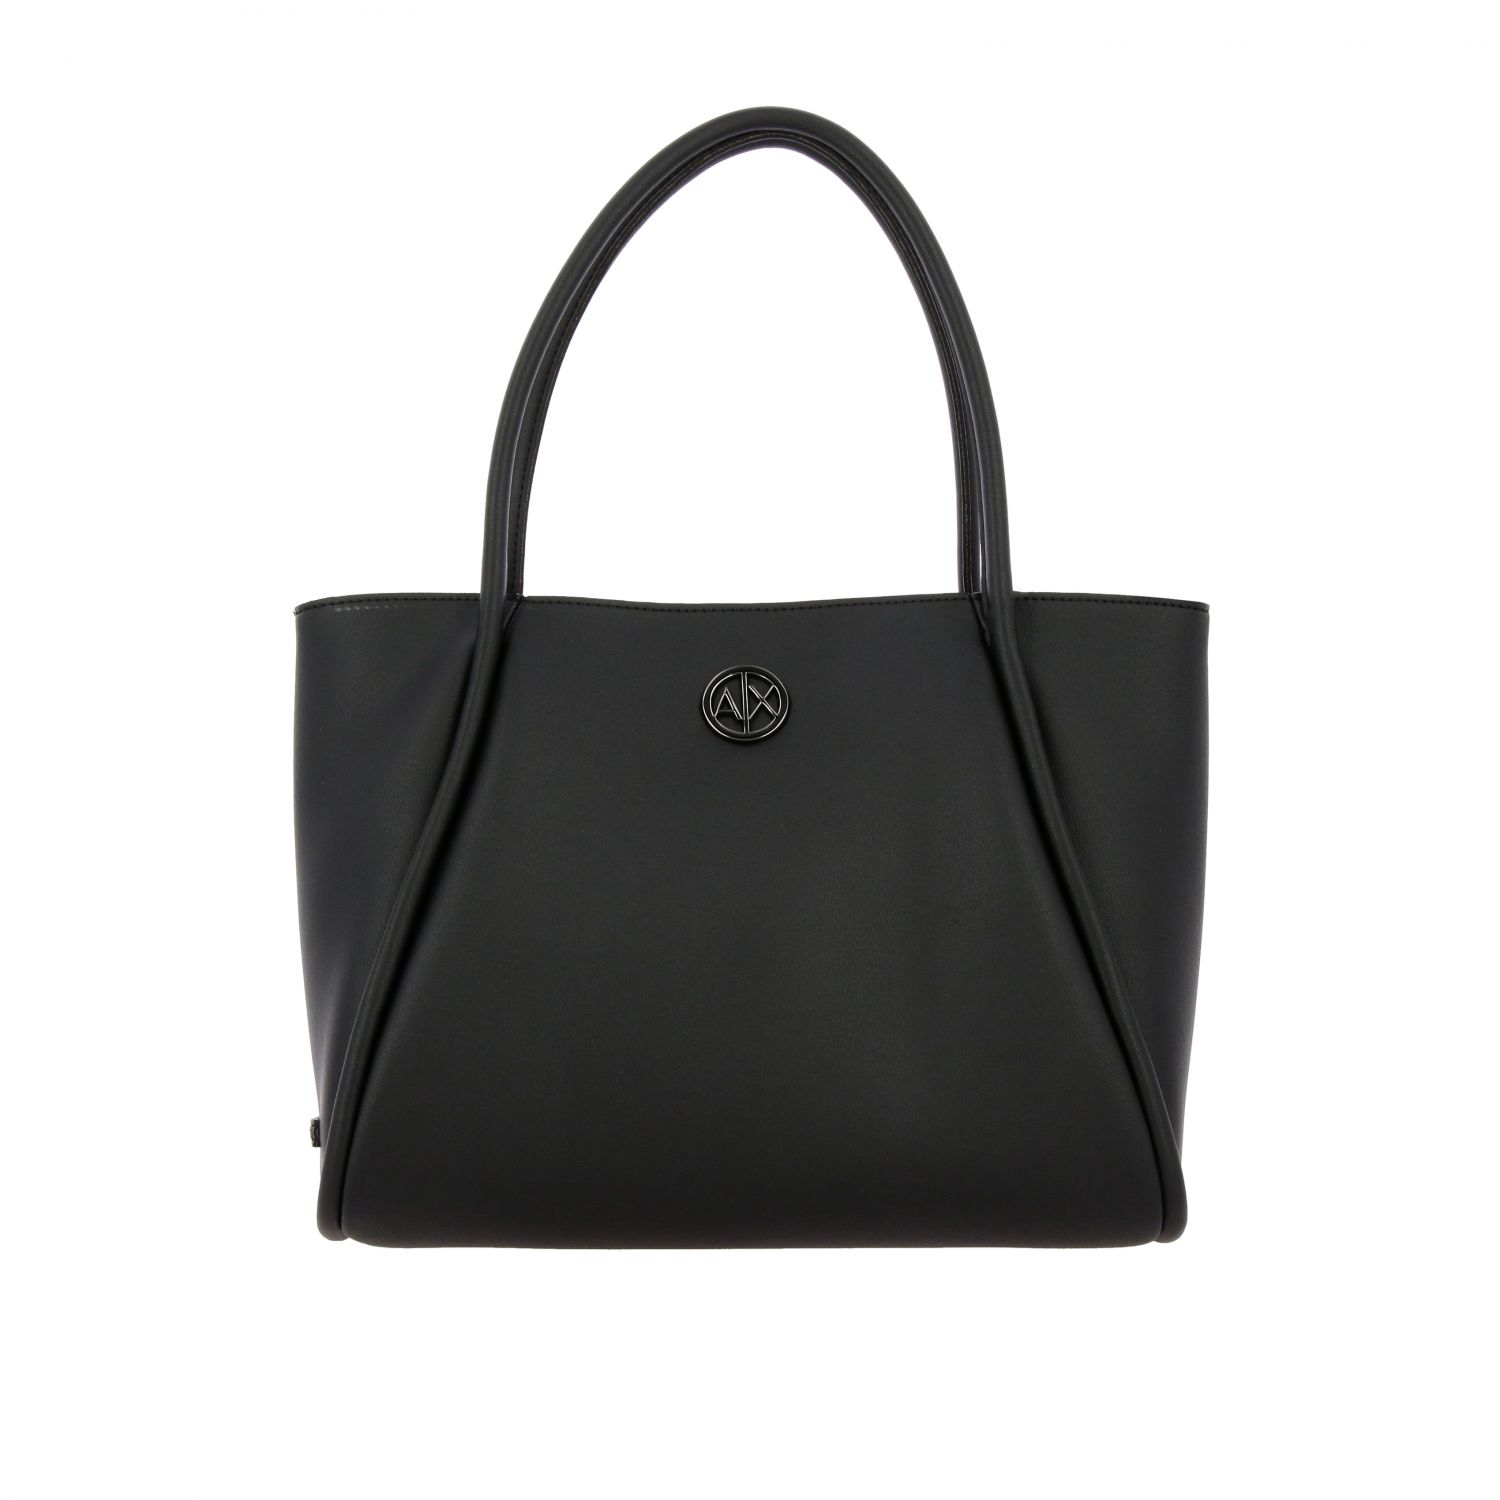 Armani Exchange Outlet: Tote bags women Emporio Armani - Black | Tote ...